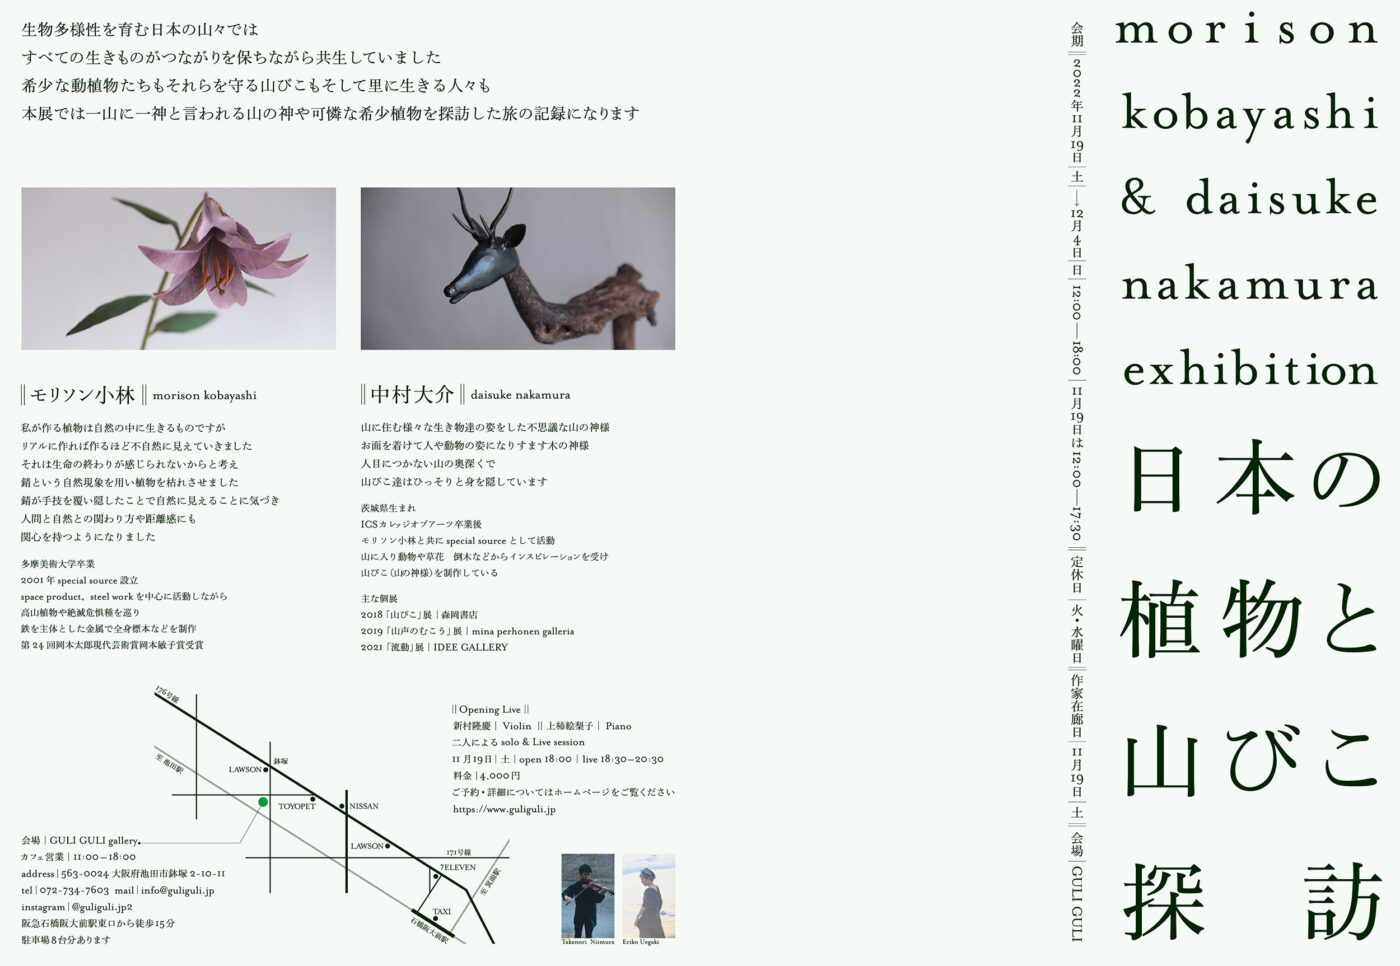 鉄と錆から希少植物をつくり出すモリソン小林と、木で山びこ（山の神様）を制作する中村大介による展示「日本の植物と山びこ探訪」、GULIGULIにて。